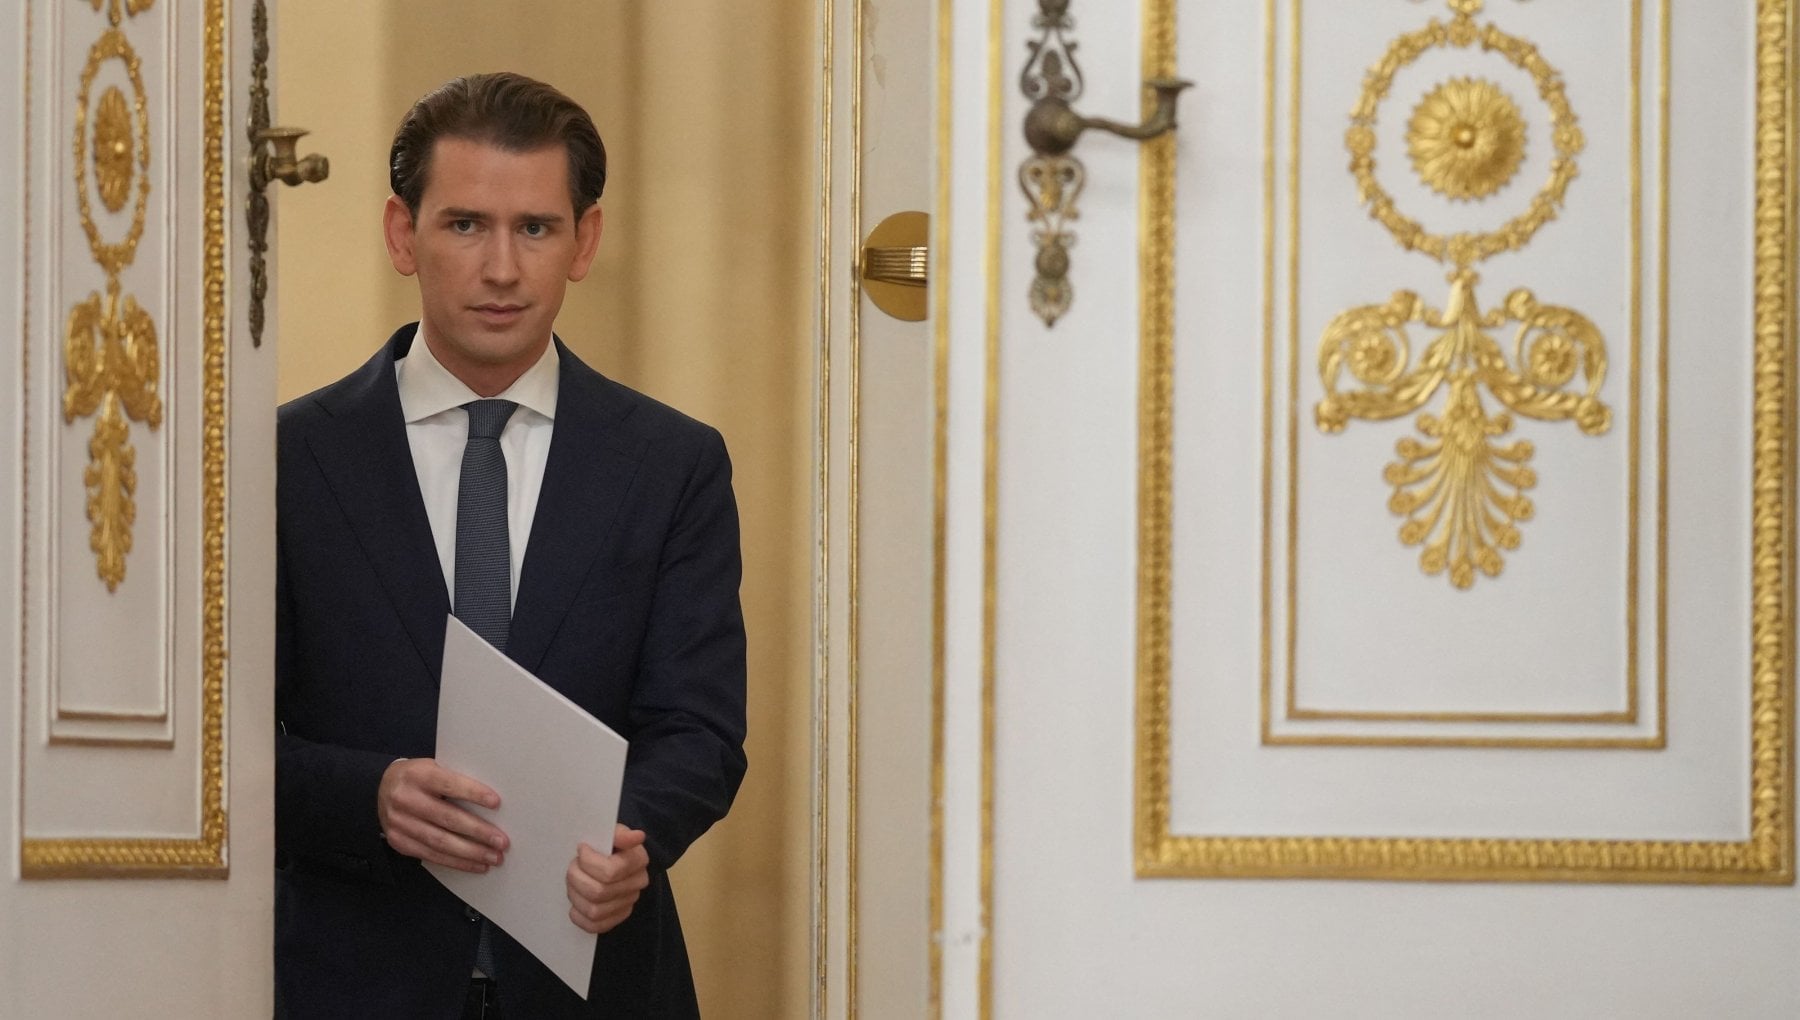 Canto del cigno per il “Wunderkind” Kurz, l’ex cancelliere austriaco lascia la politica a soli 35 anni